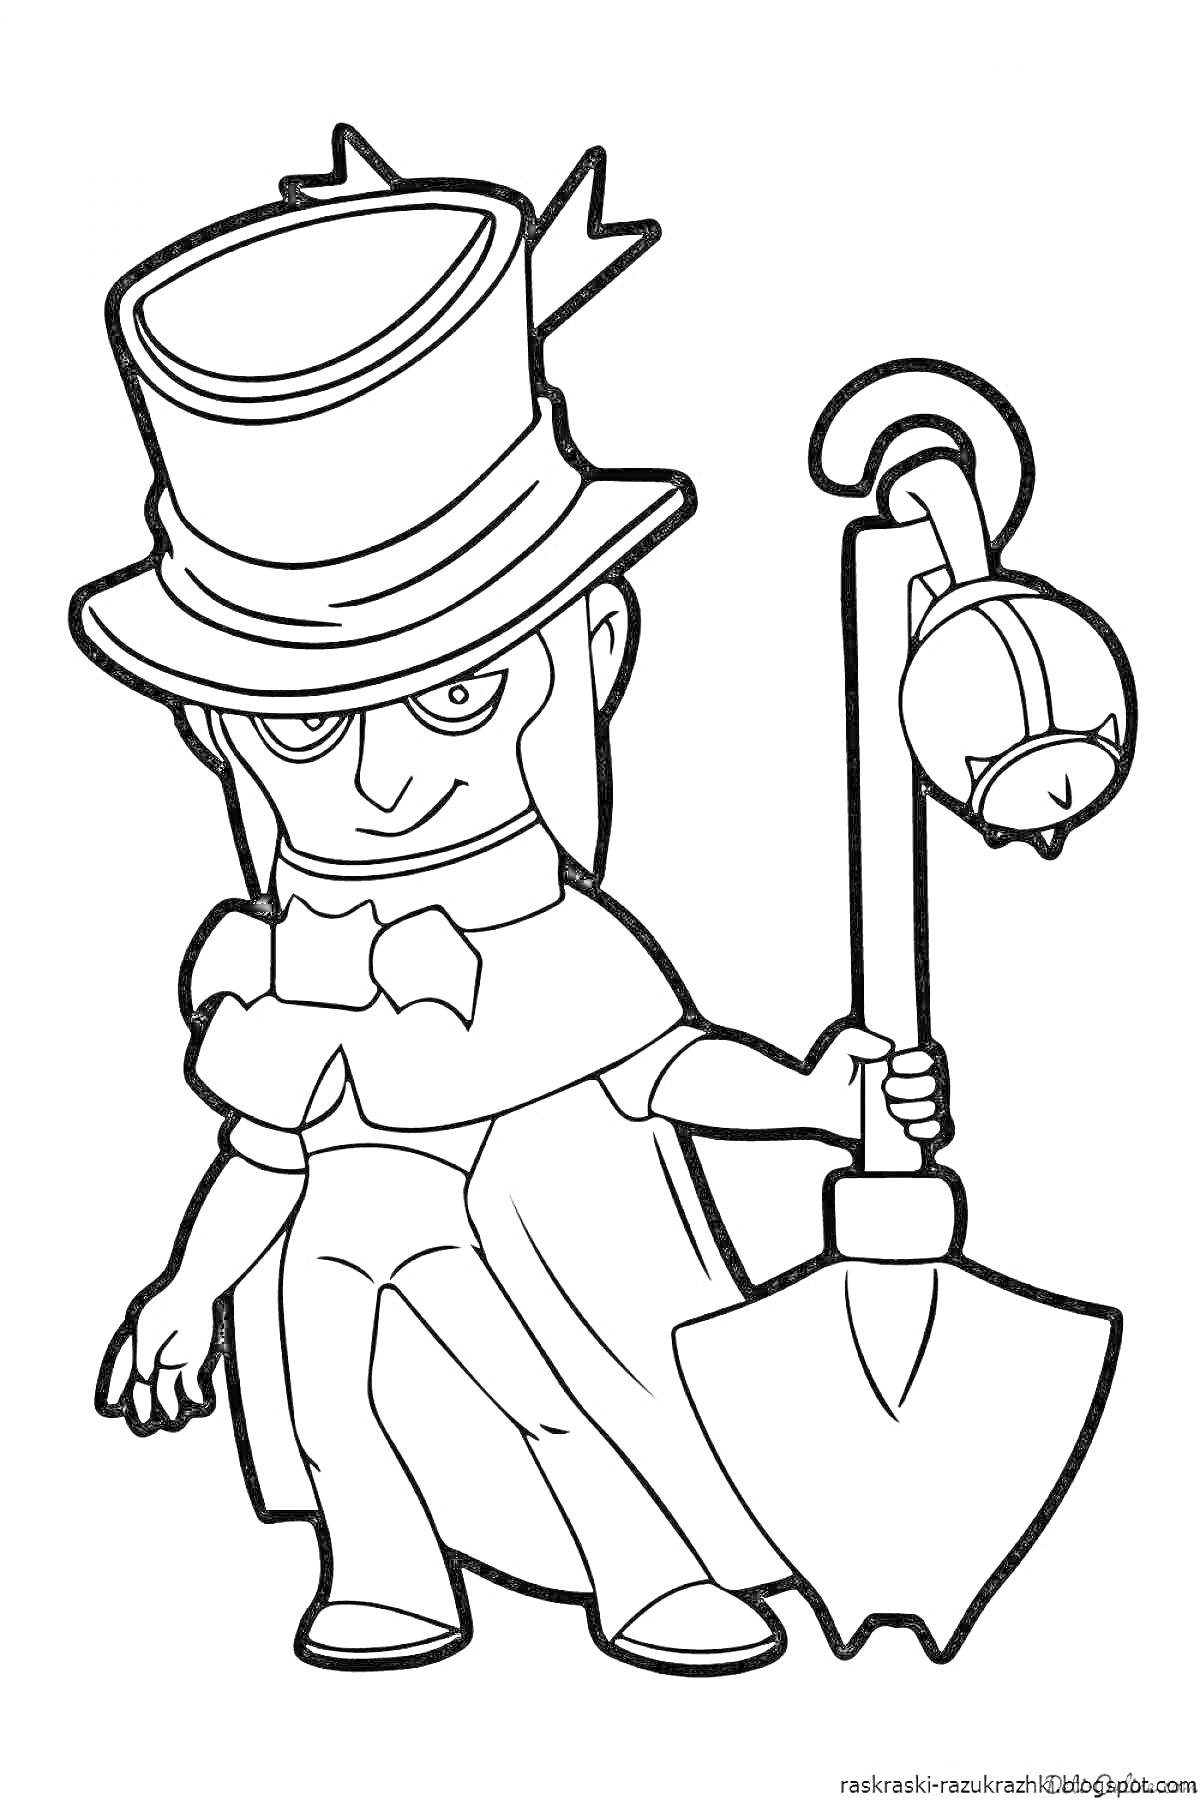 Персонаж в цилиндре с маской, держащий лопату и колокольчик